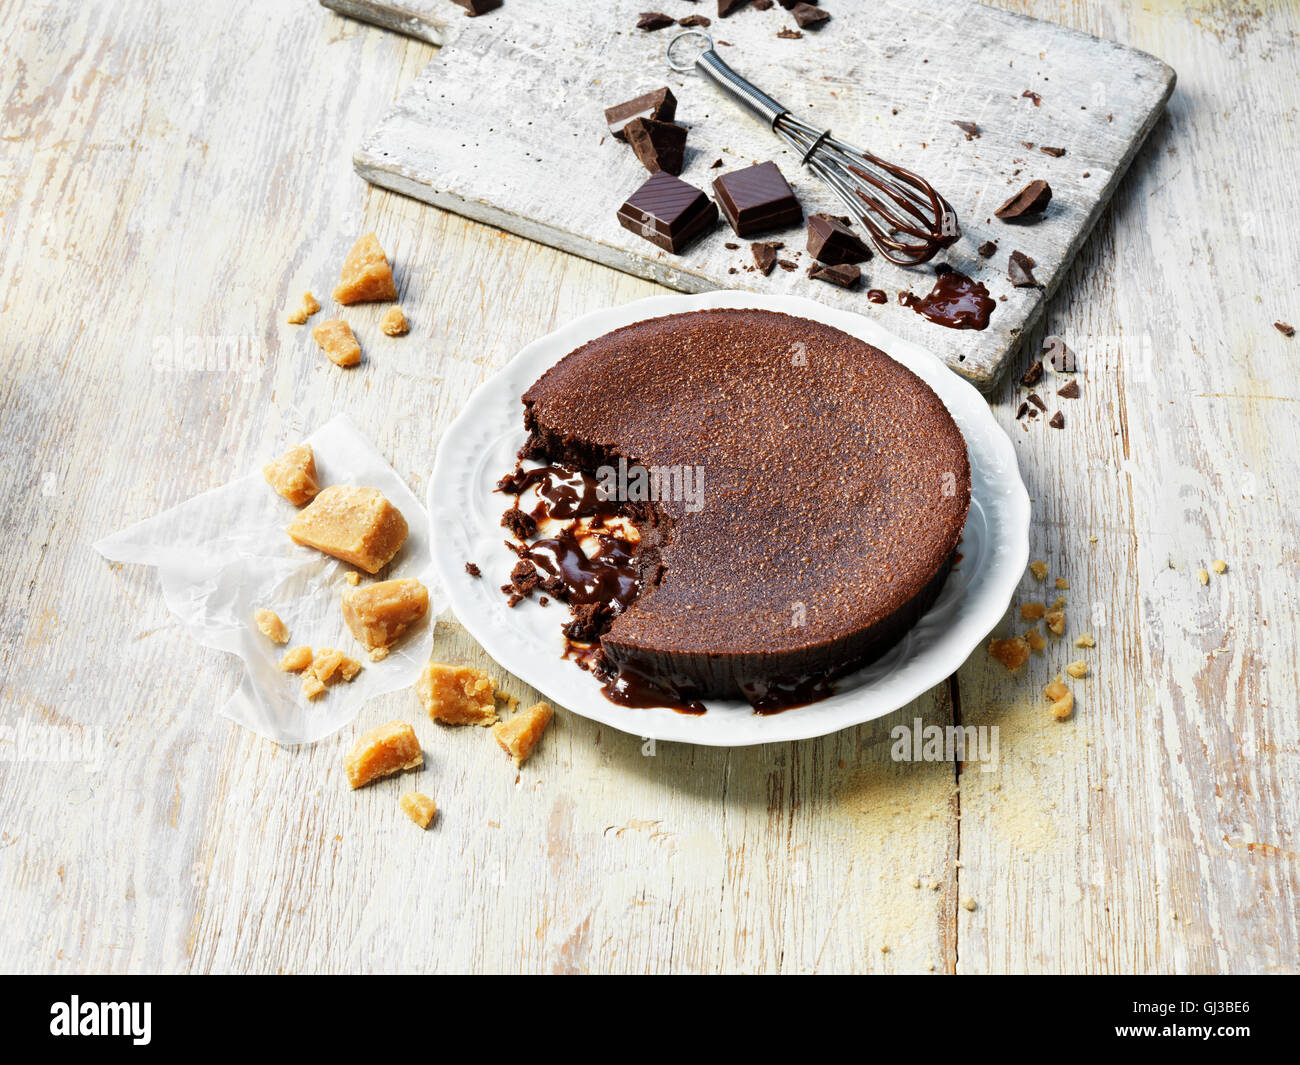 Heißer Schokolade fudge Pudding, krümelig Fudge, Stücke von Schokolade, Schneebesen, weiß gewaschen Holztisch und Schneidebrett Stockfoto